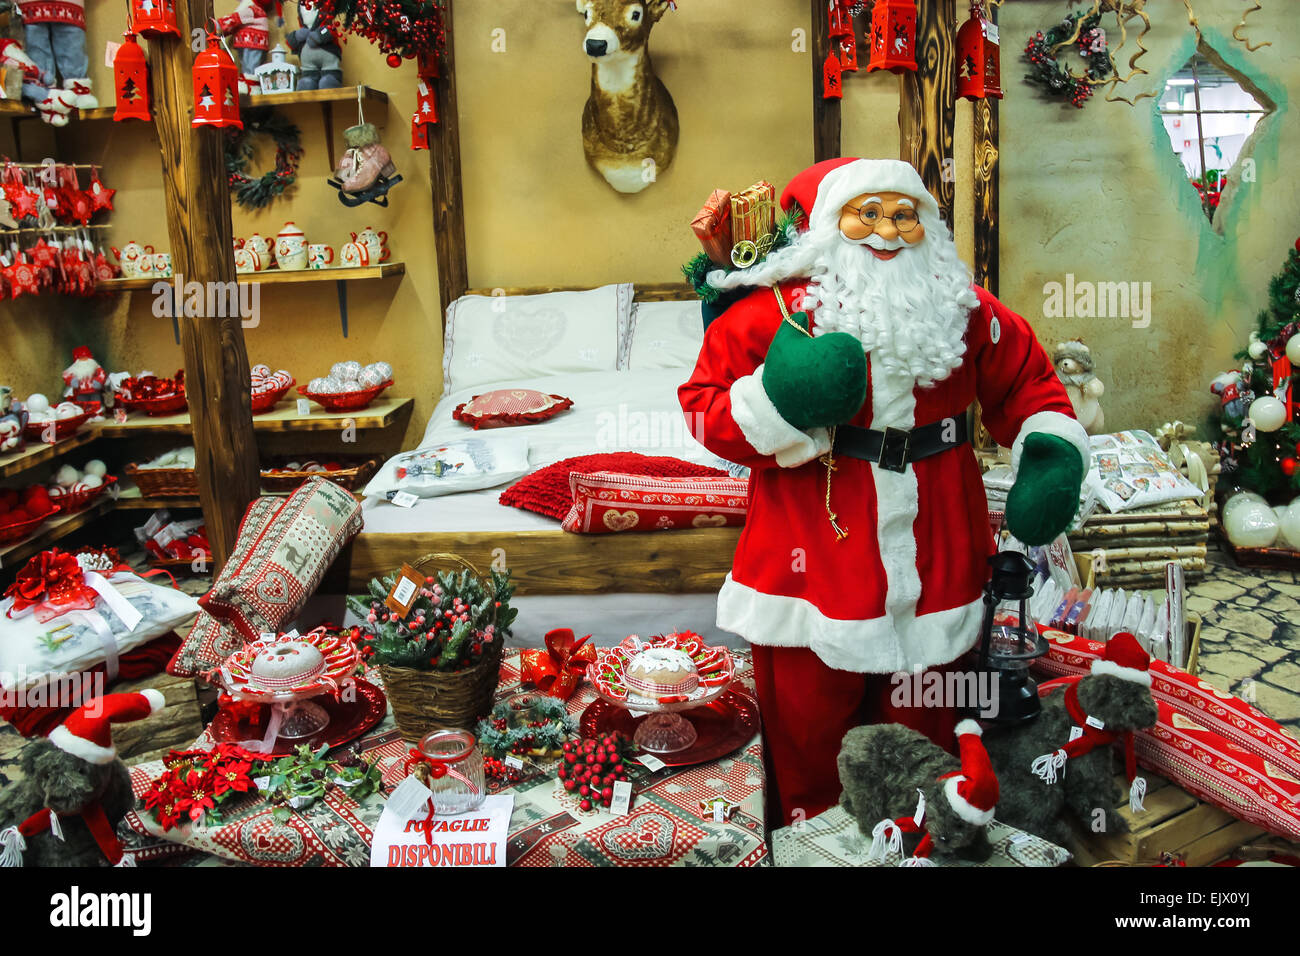 Babbo Natale Italy.Taneto Italy December 27 2014 Great Cristmas Market Villaggio Stock Photo Alamy